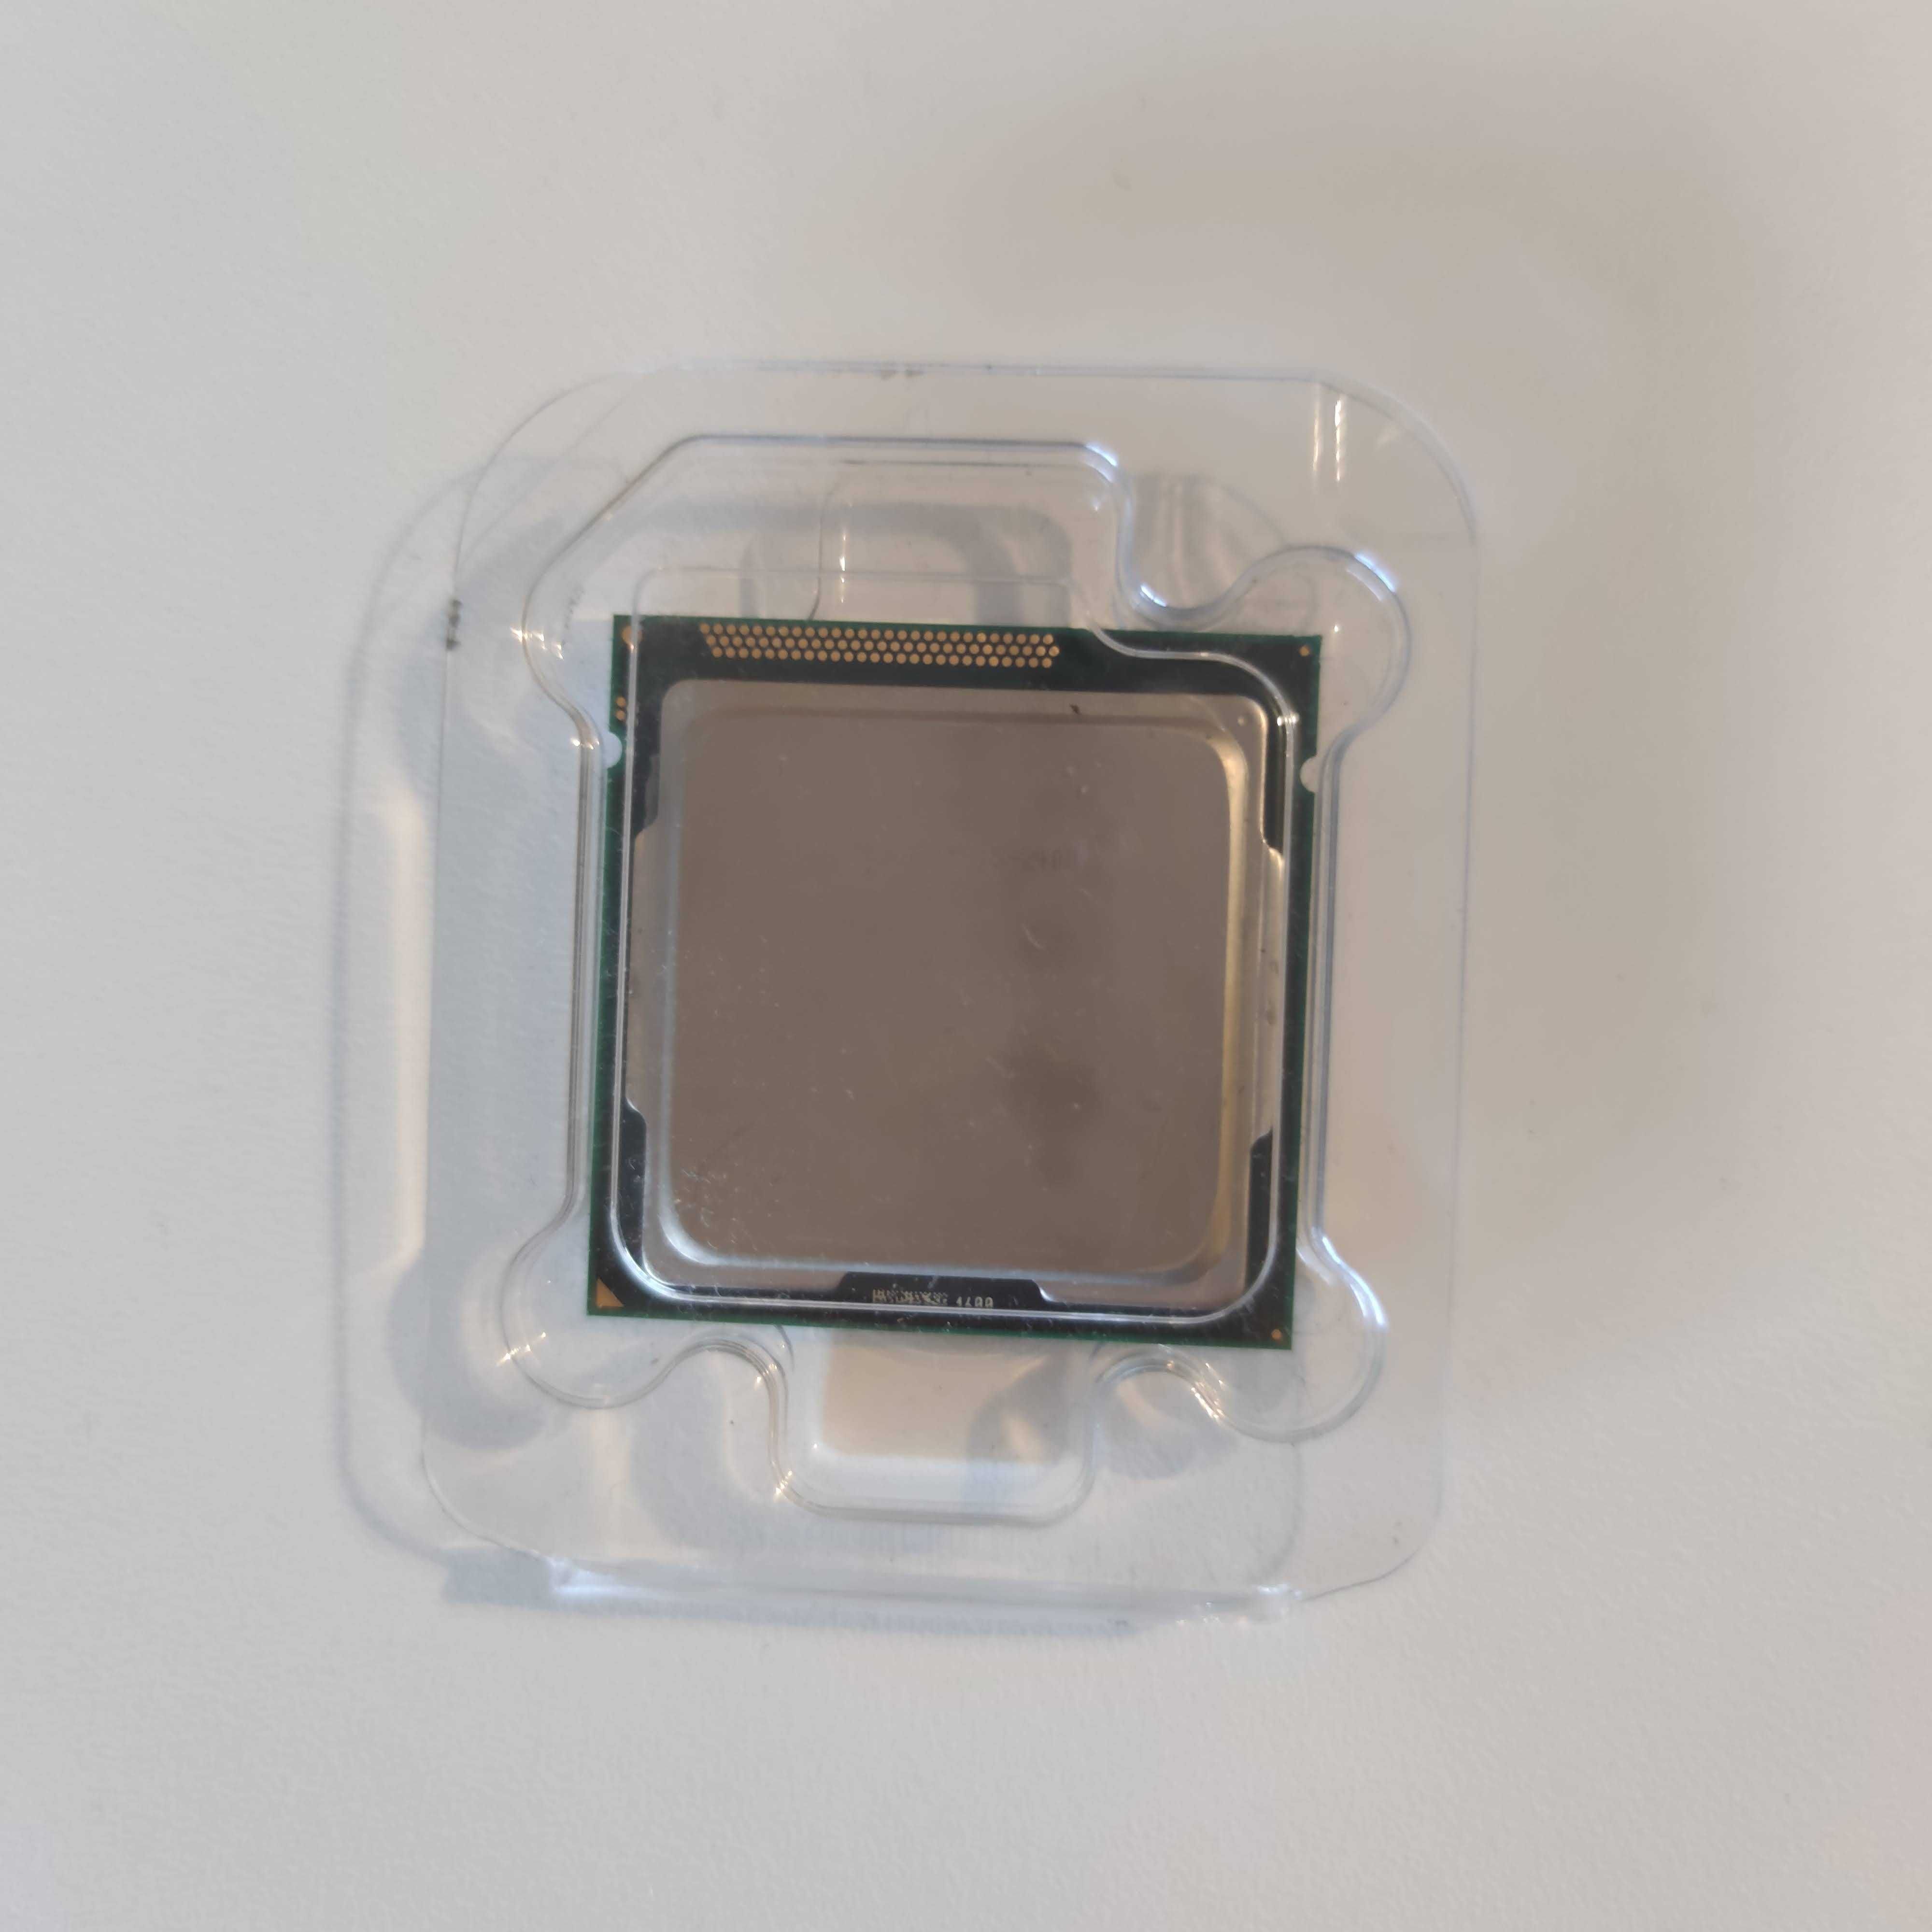 Processador Intel Core i5 2400